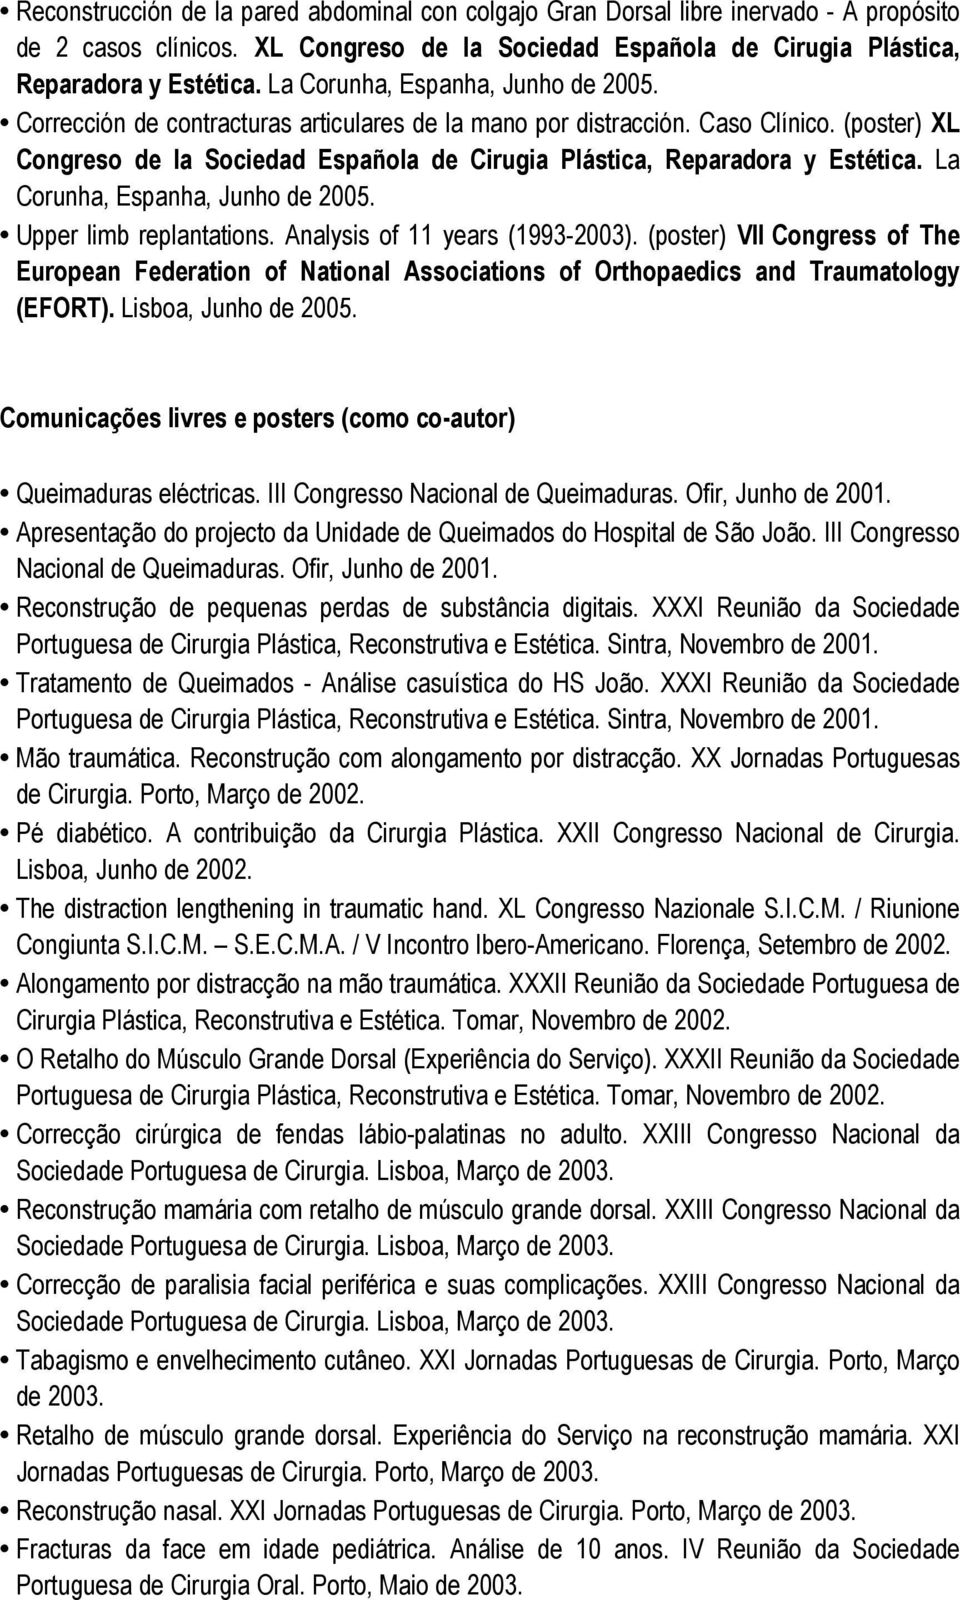 (poster) XL Congreso de la Sociedad Española de Cirugia Plástica, Reparadora y Estética. La Corunha, Espanha, Junho de 2005. Upper limb replantations. Analysis of 11 years (1993-2003).